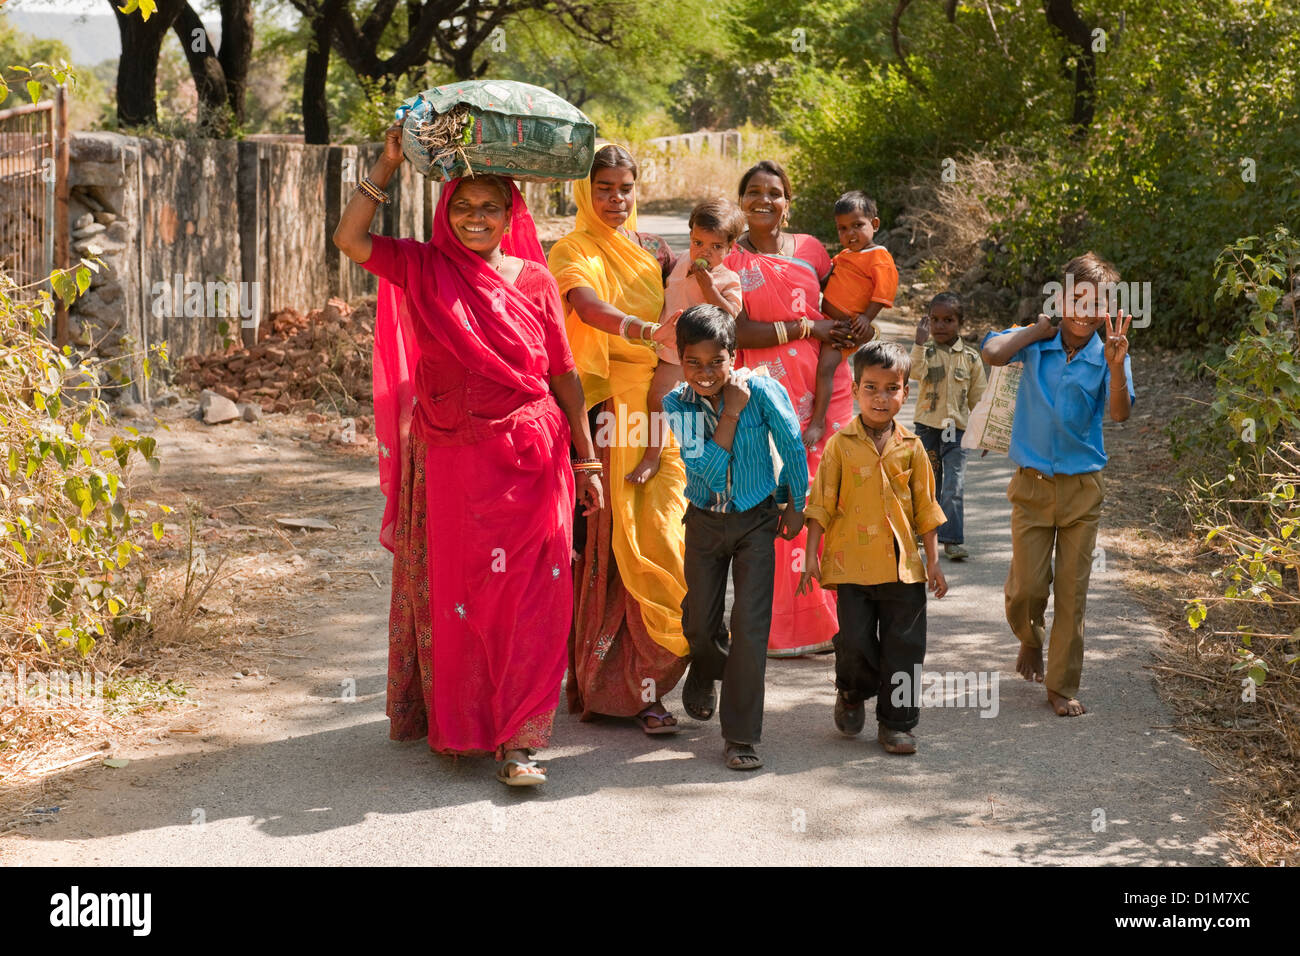 Une famille d'Indiens colorés happy smiling groupe de femmes garçons filles et un bébé de retour de shopping dans une rue calme, dans l'Asie de l'Inde Banque D'Images